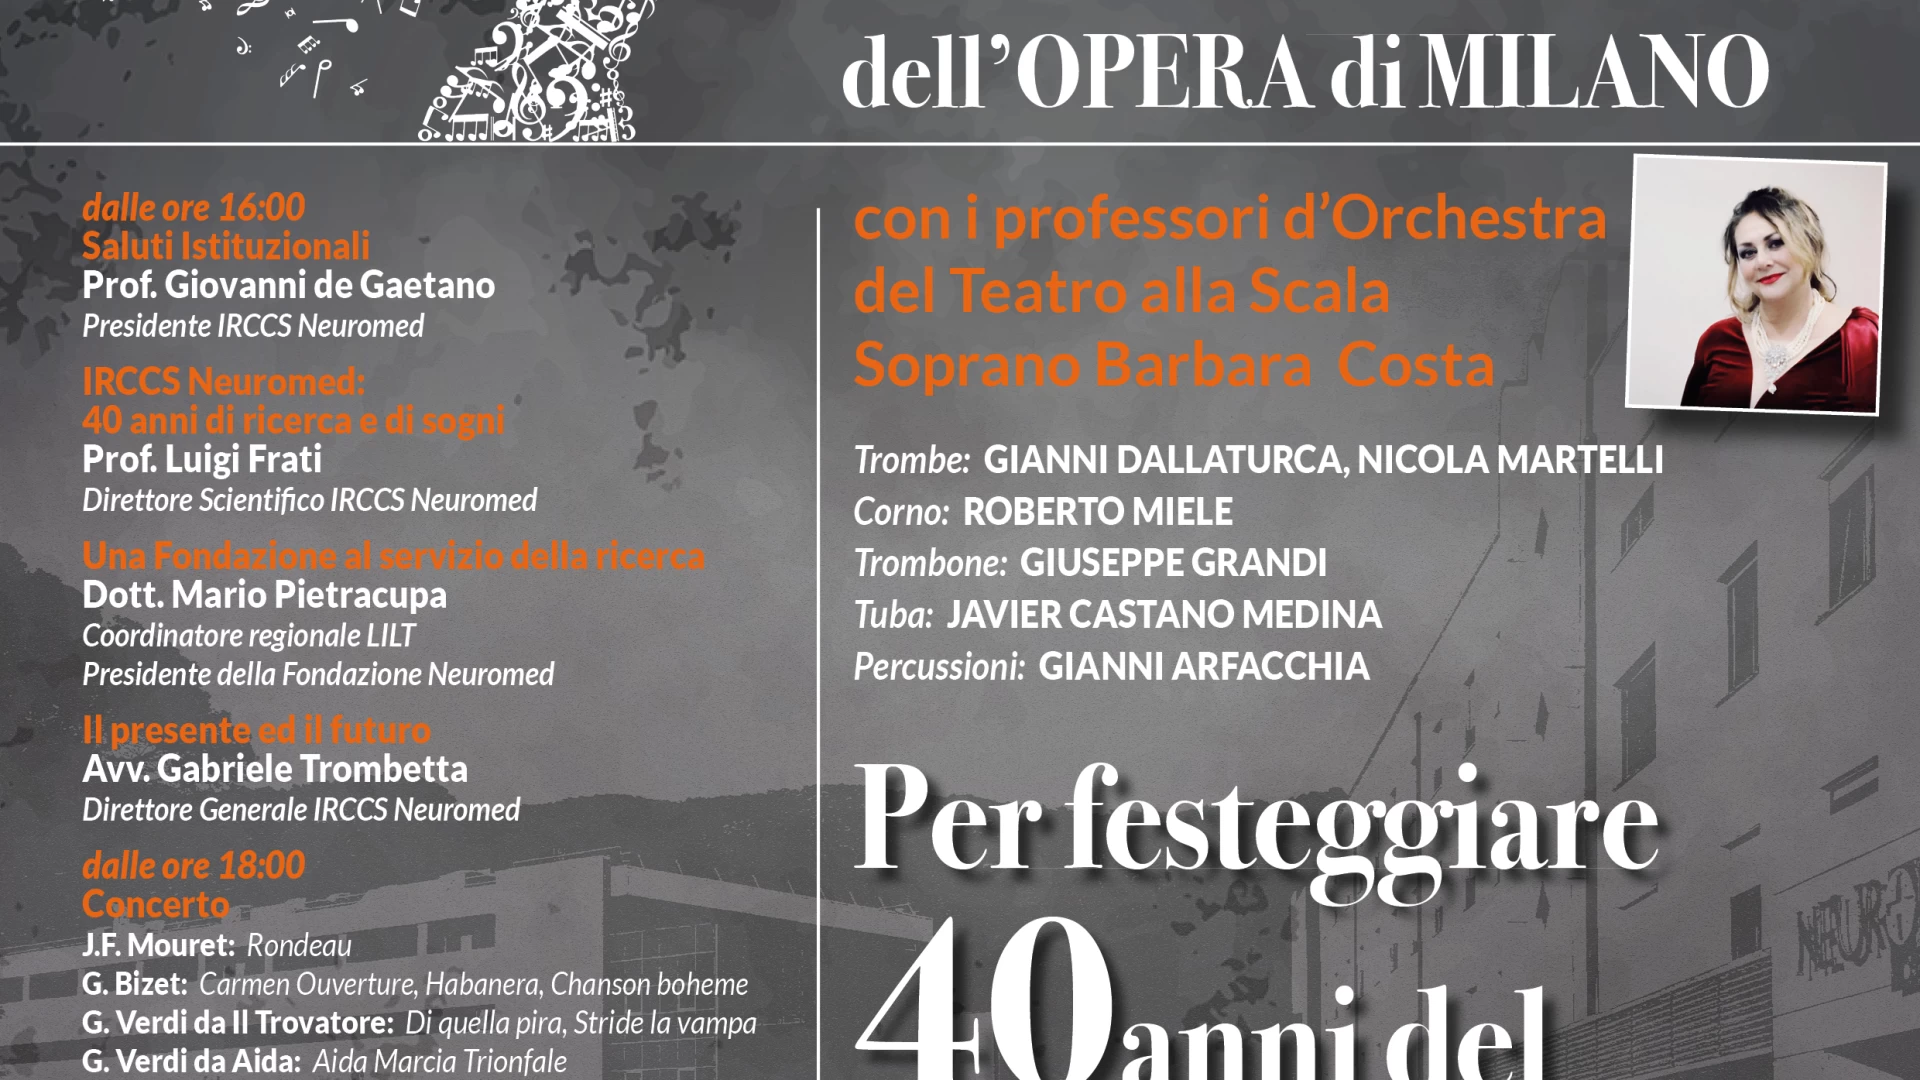 40 ANNI IRCCS :L’Istituto di Pozzilli celebra i quarant’anni dal riconoscimento ministeriale con un concerto dell’Opera di Milano